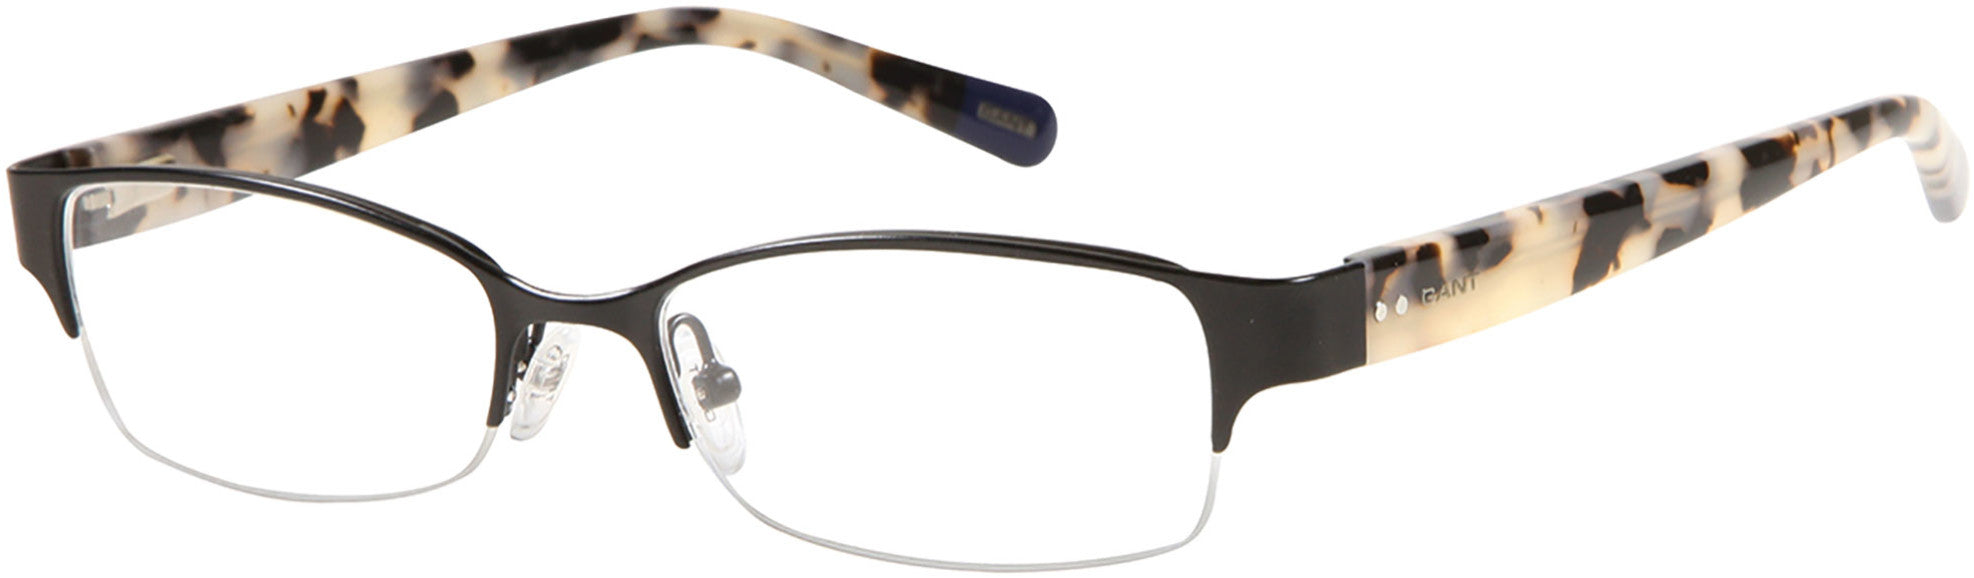 Gant GAA387 Eyeglasses 002-002 - Matte Black